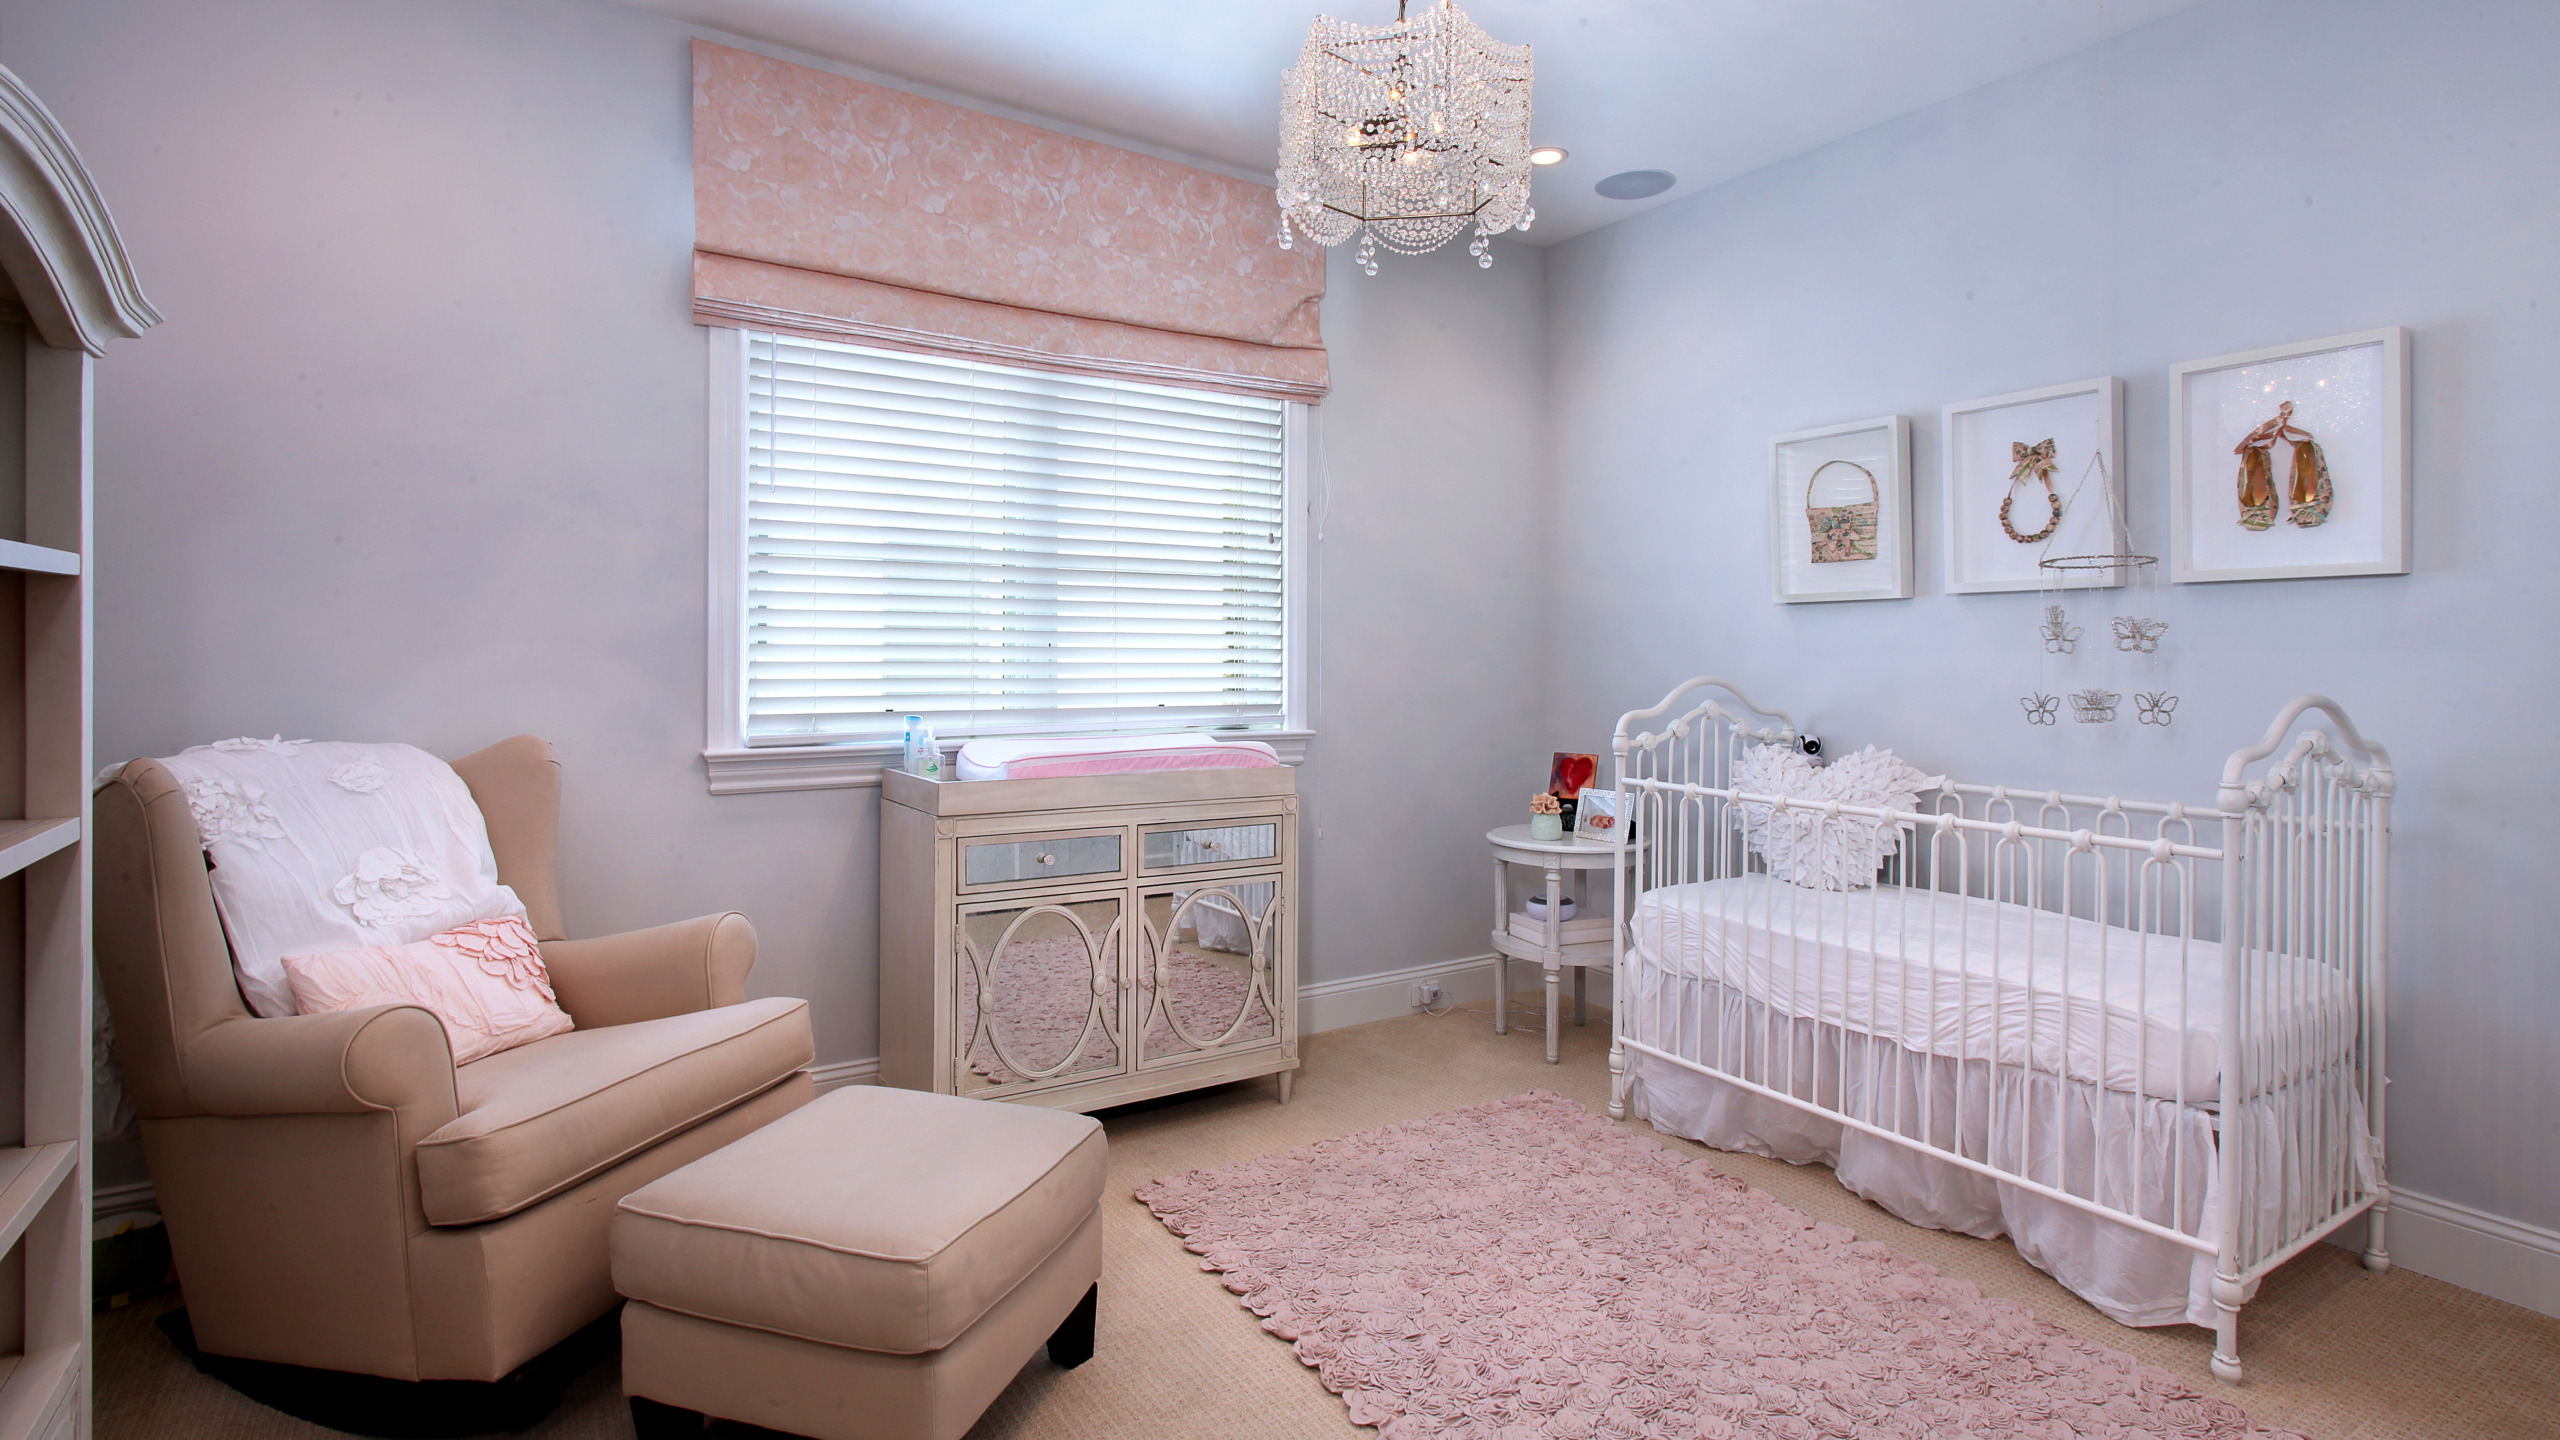 Спальни для новорожденных